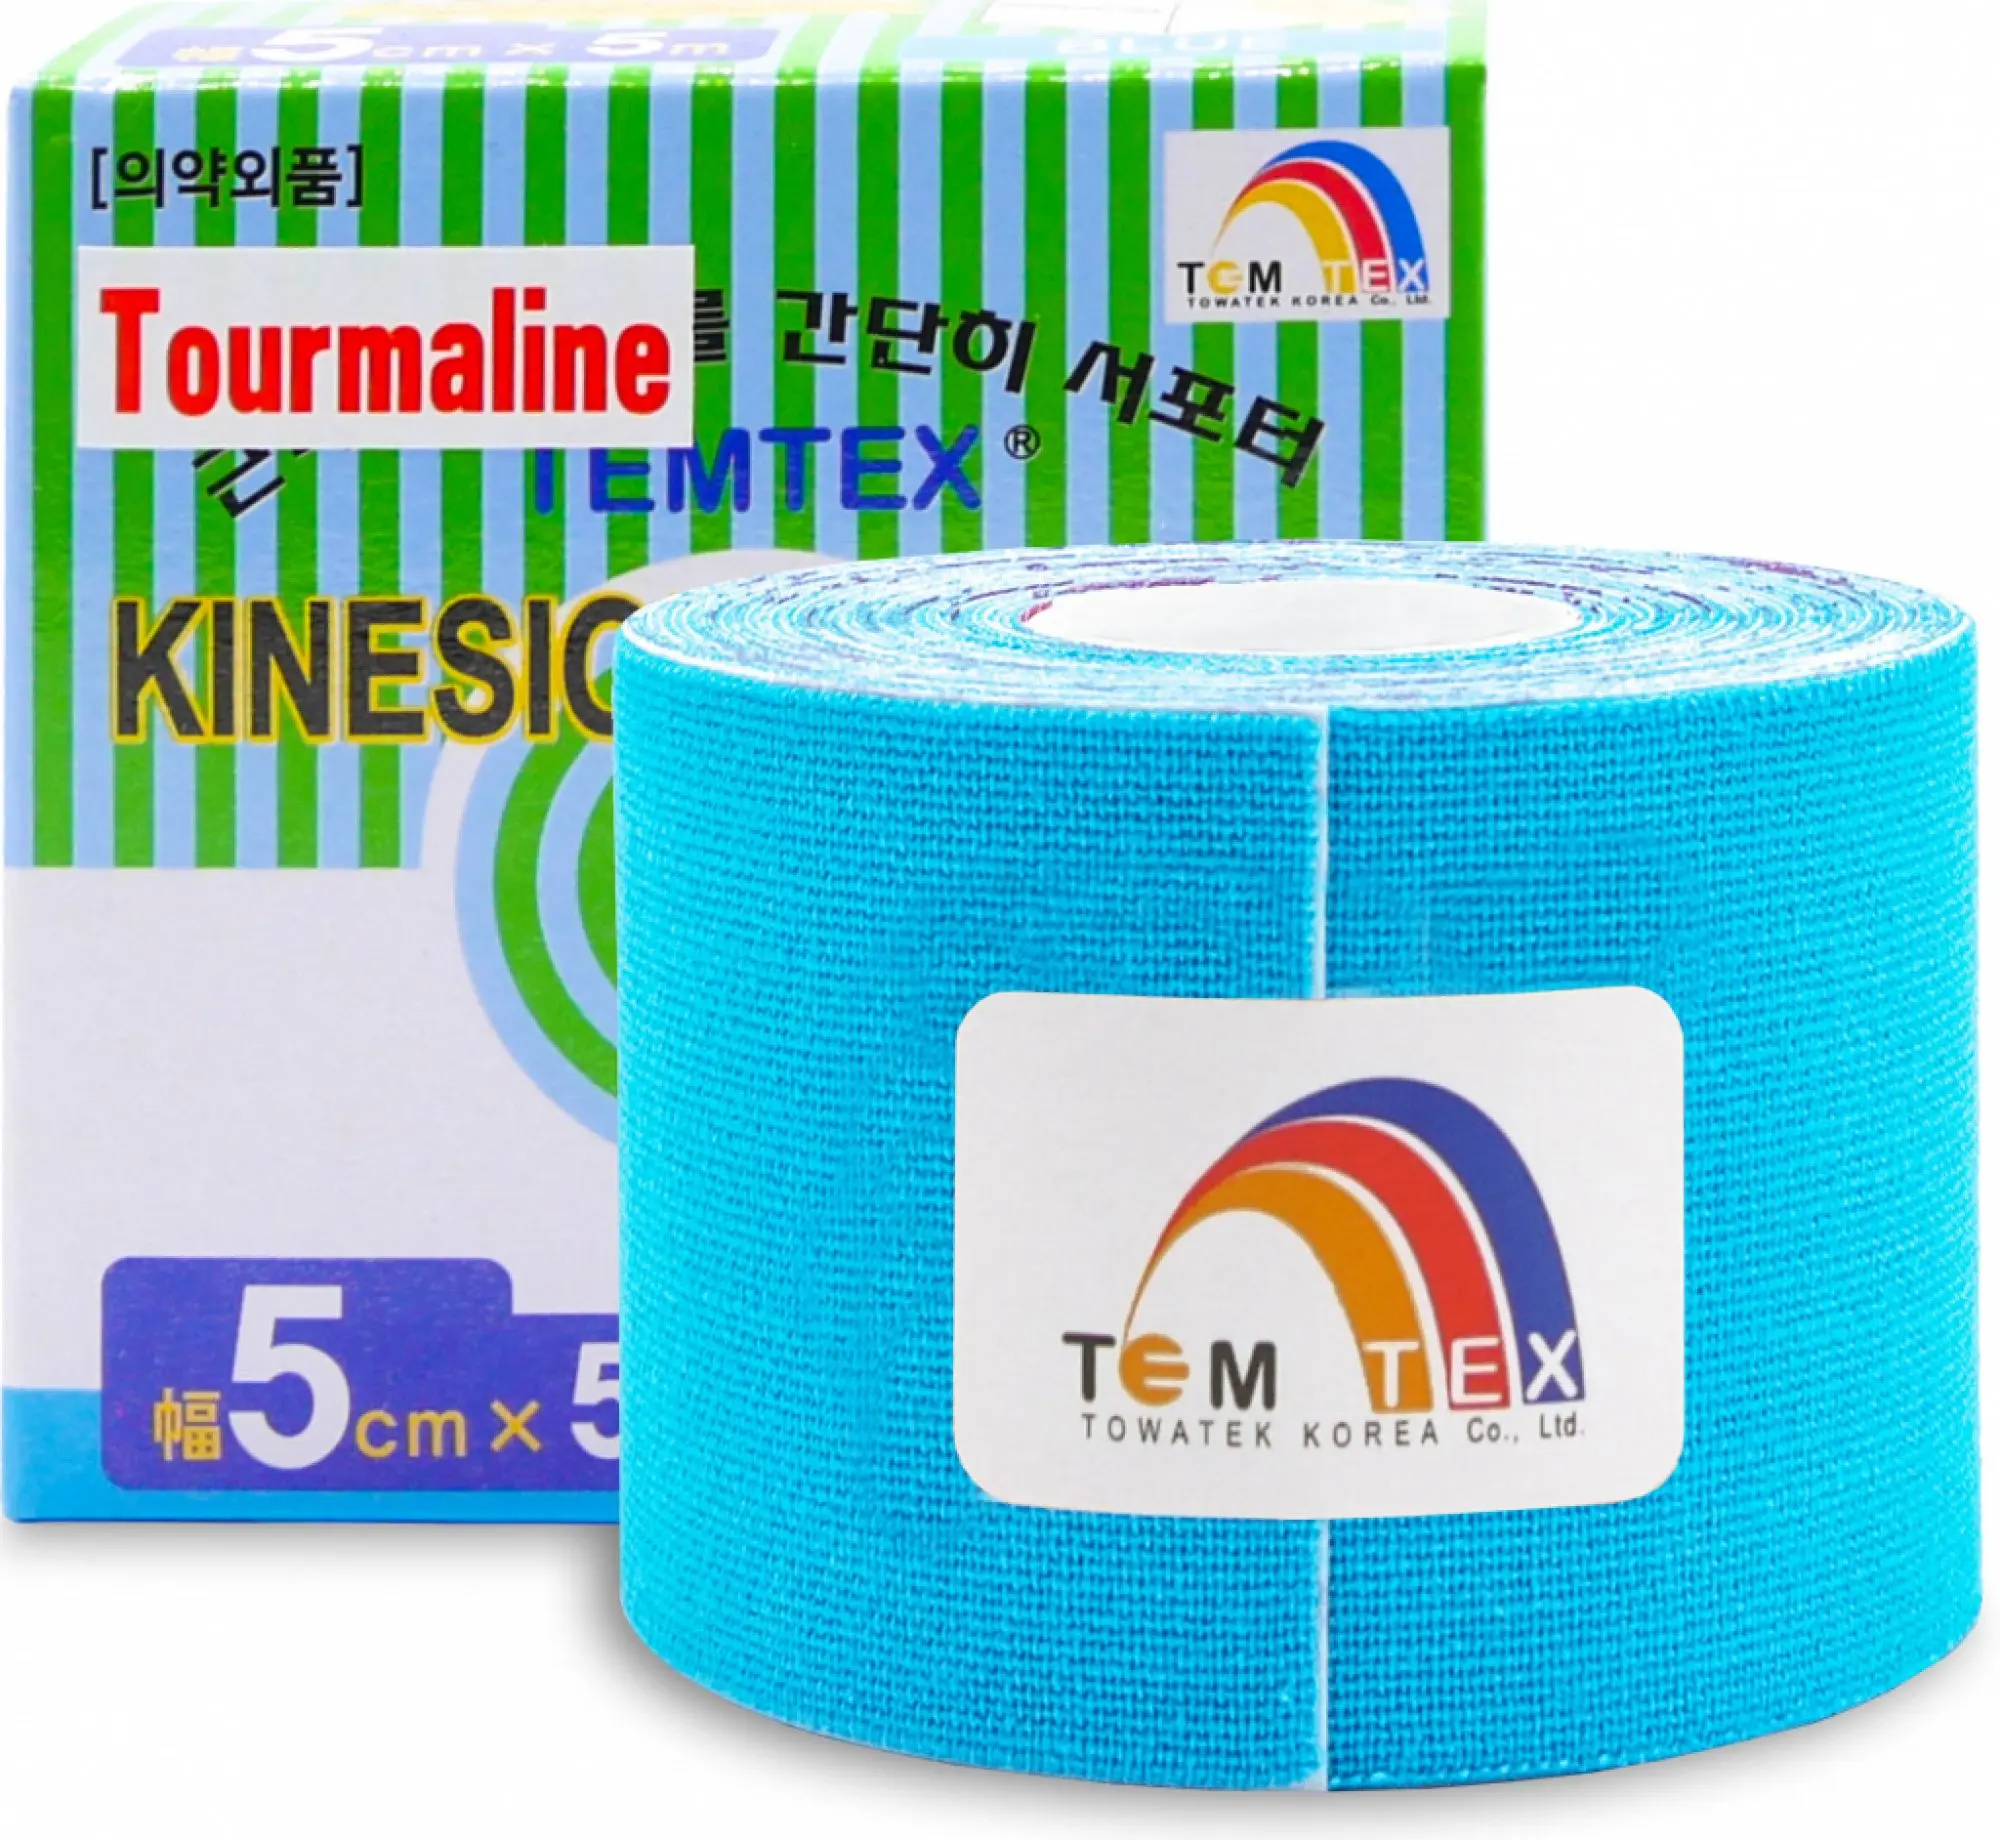 Temtex Kinesiology Tape Tourmaline modrá 5cm x 5m